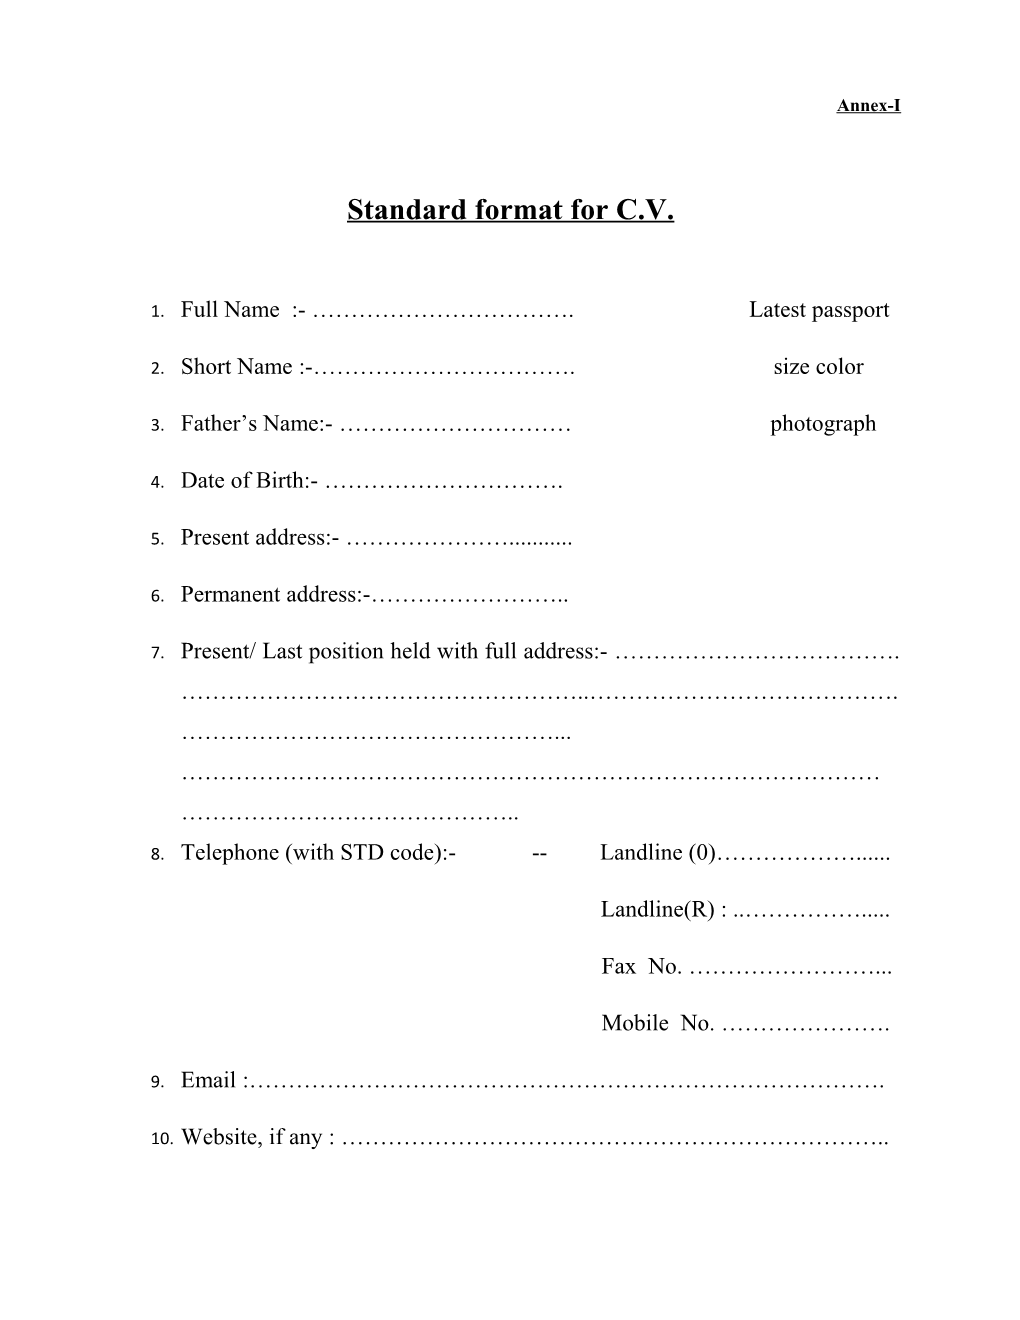 Standard Format for C.V